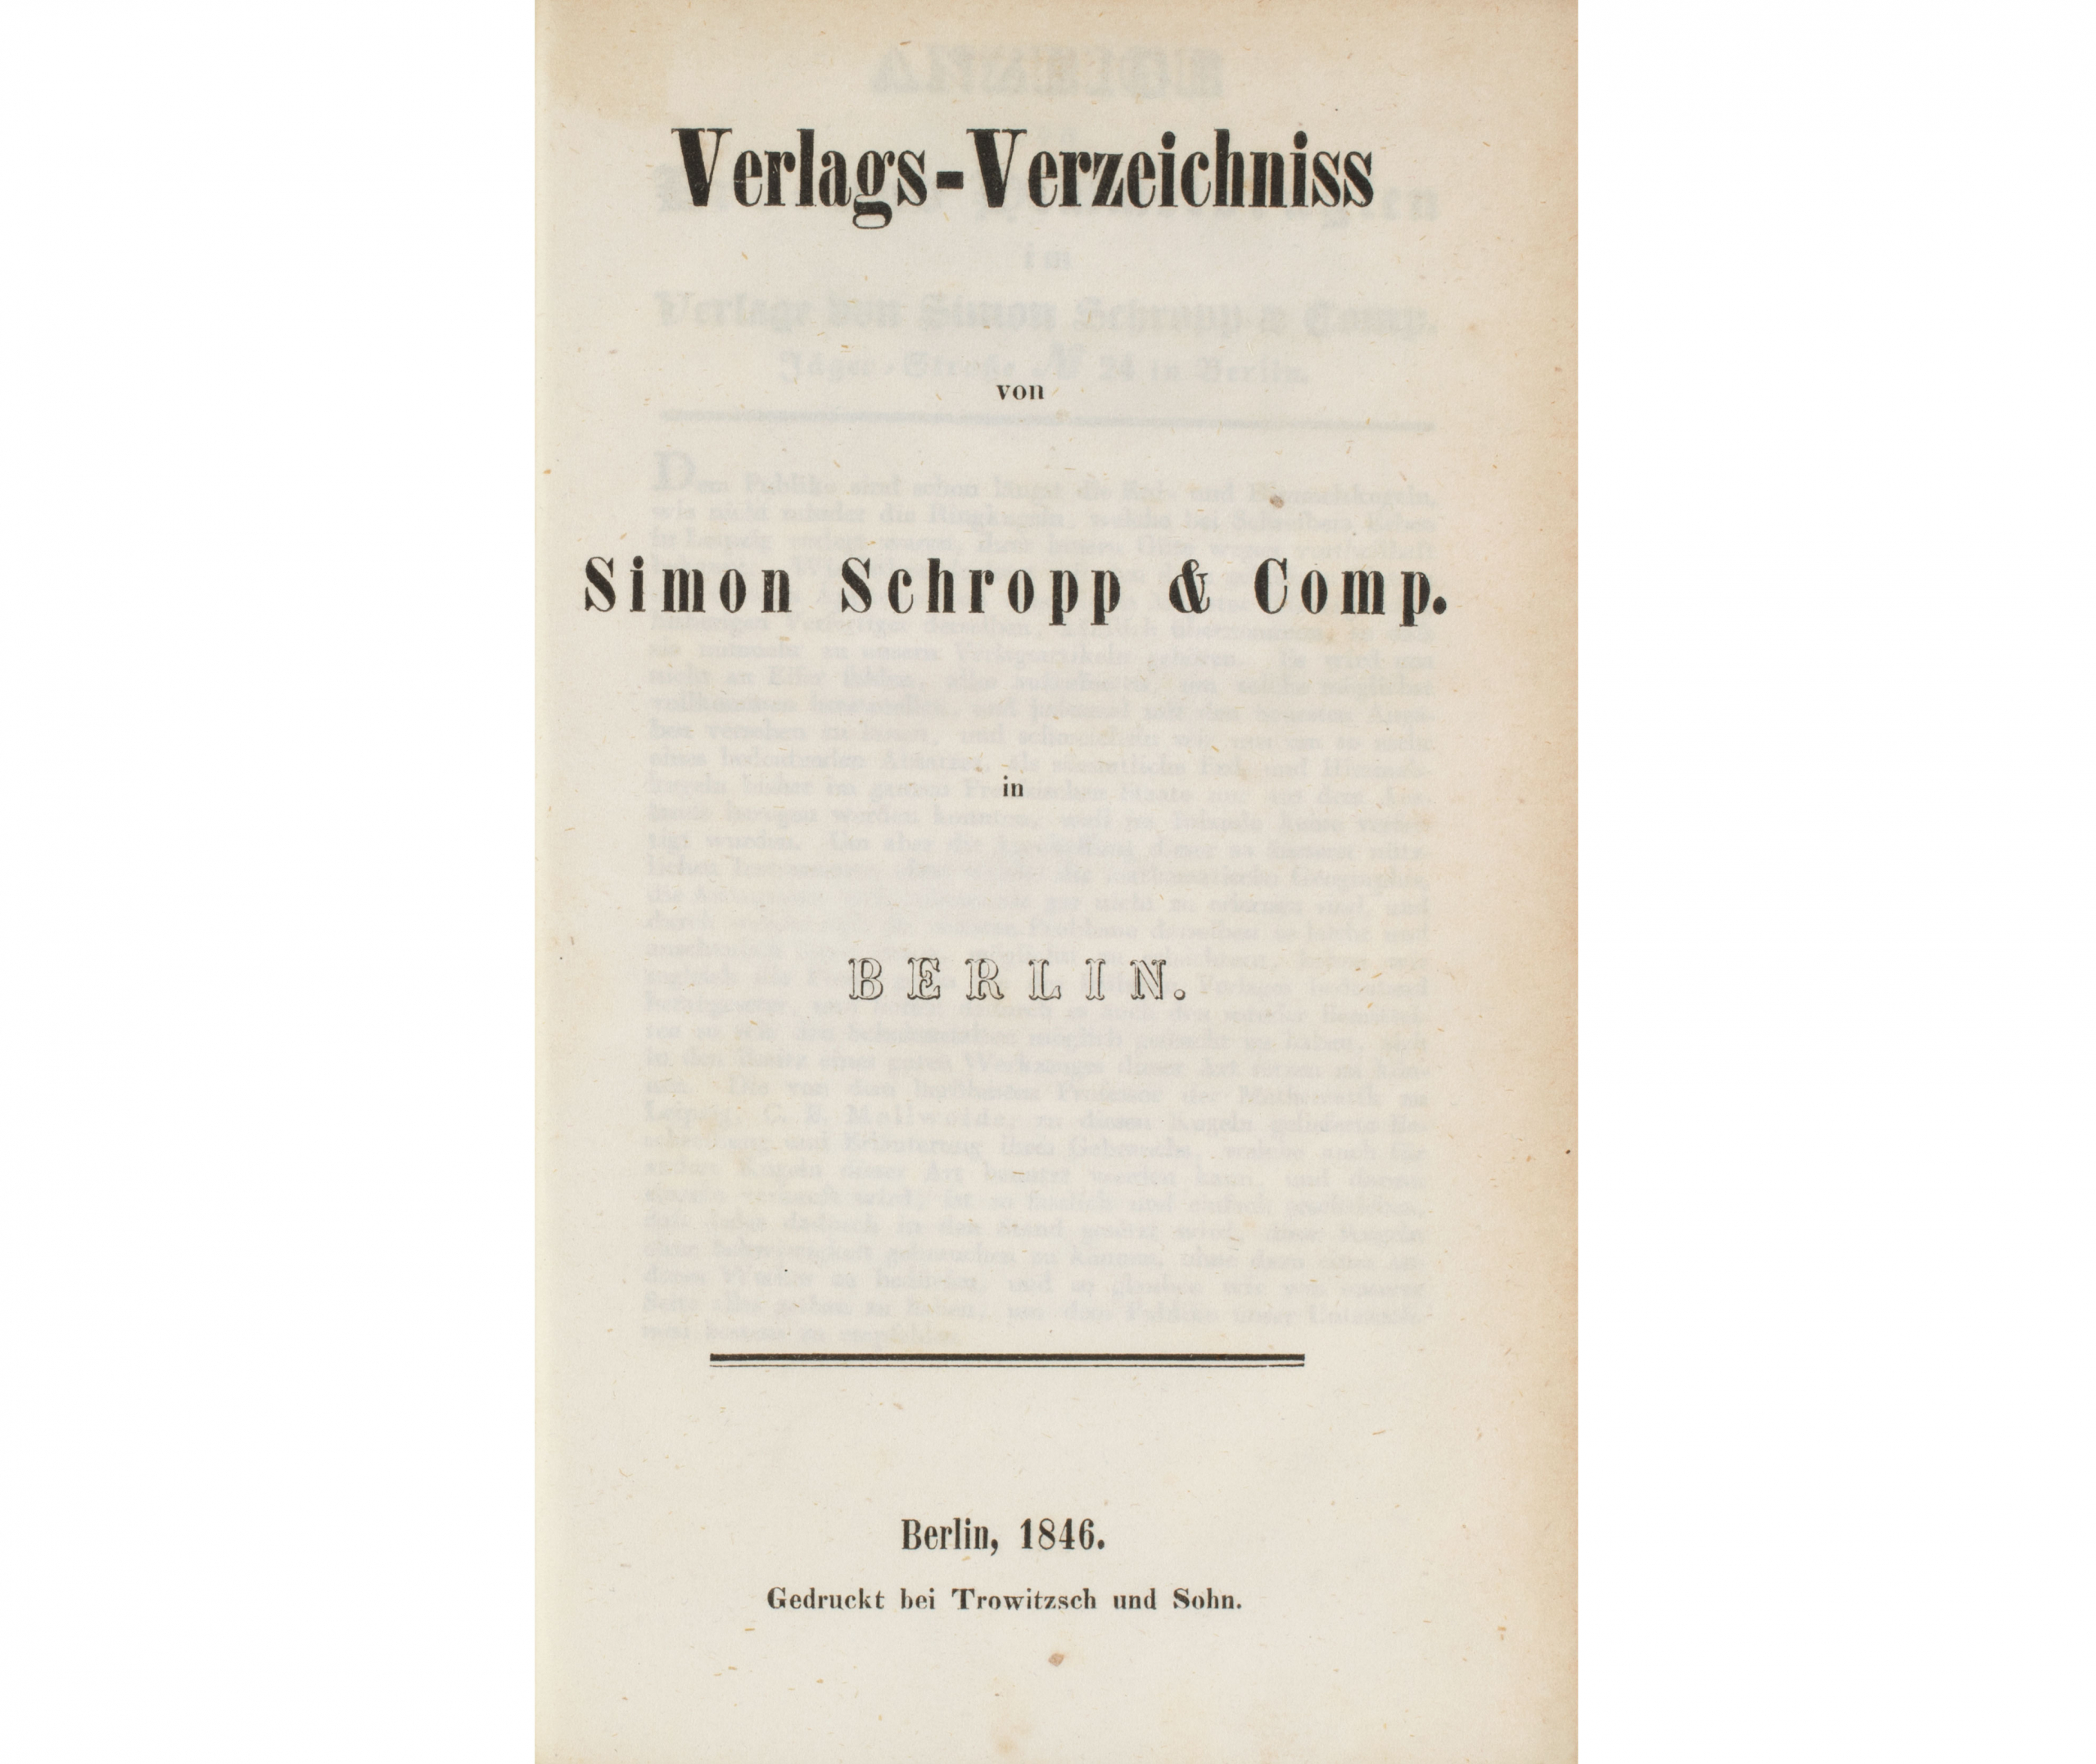 Verlagsverzeichnis von Simon Schropp, 1846. SBB-PK. Public Domain Mark 1.0